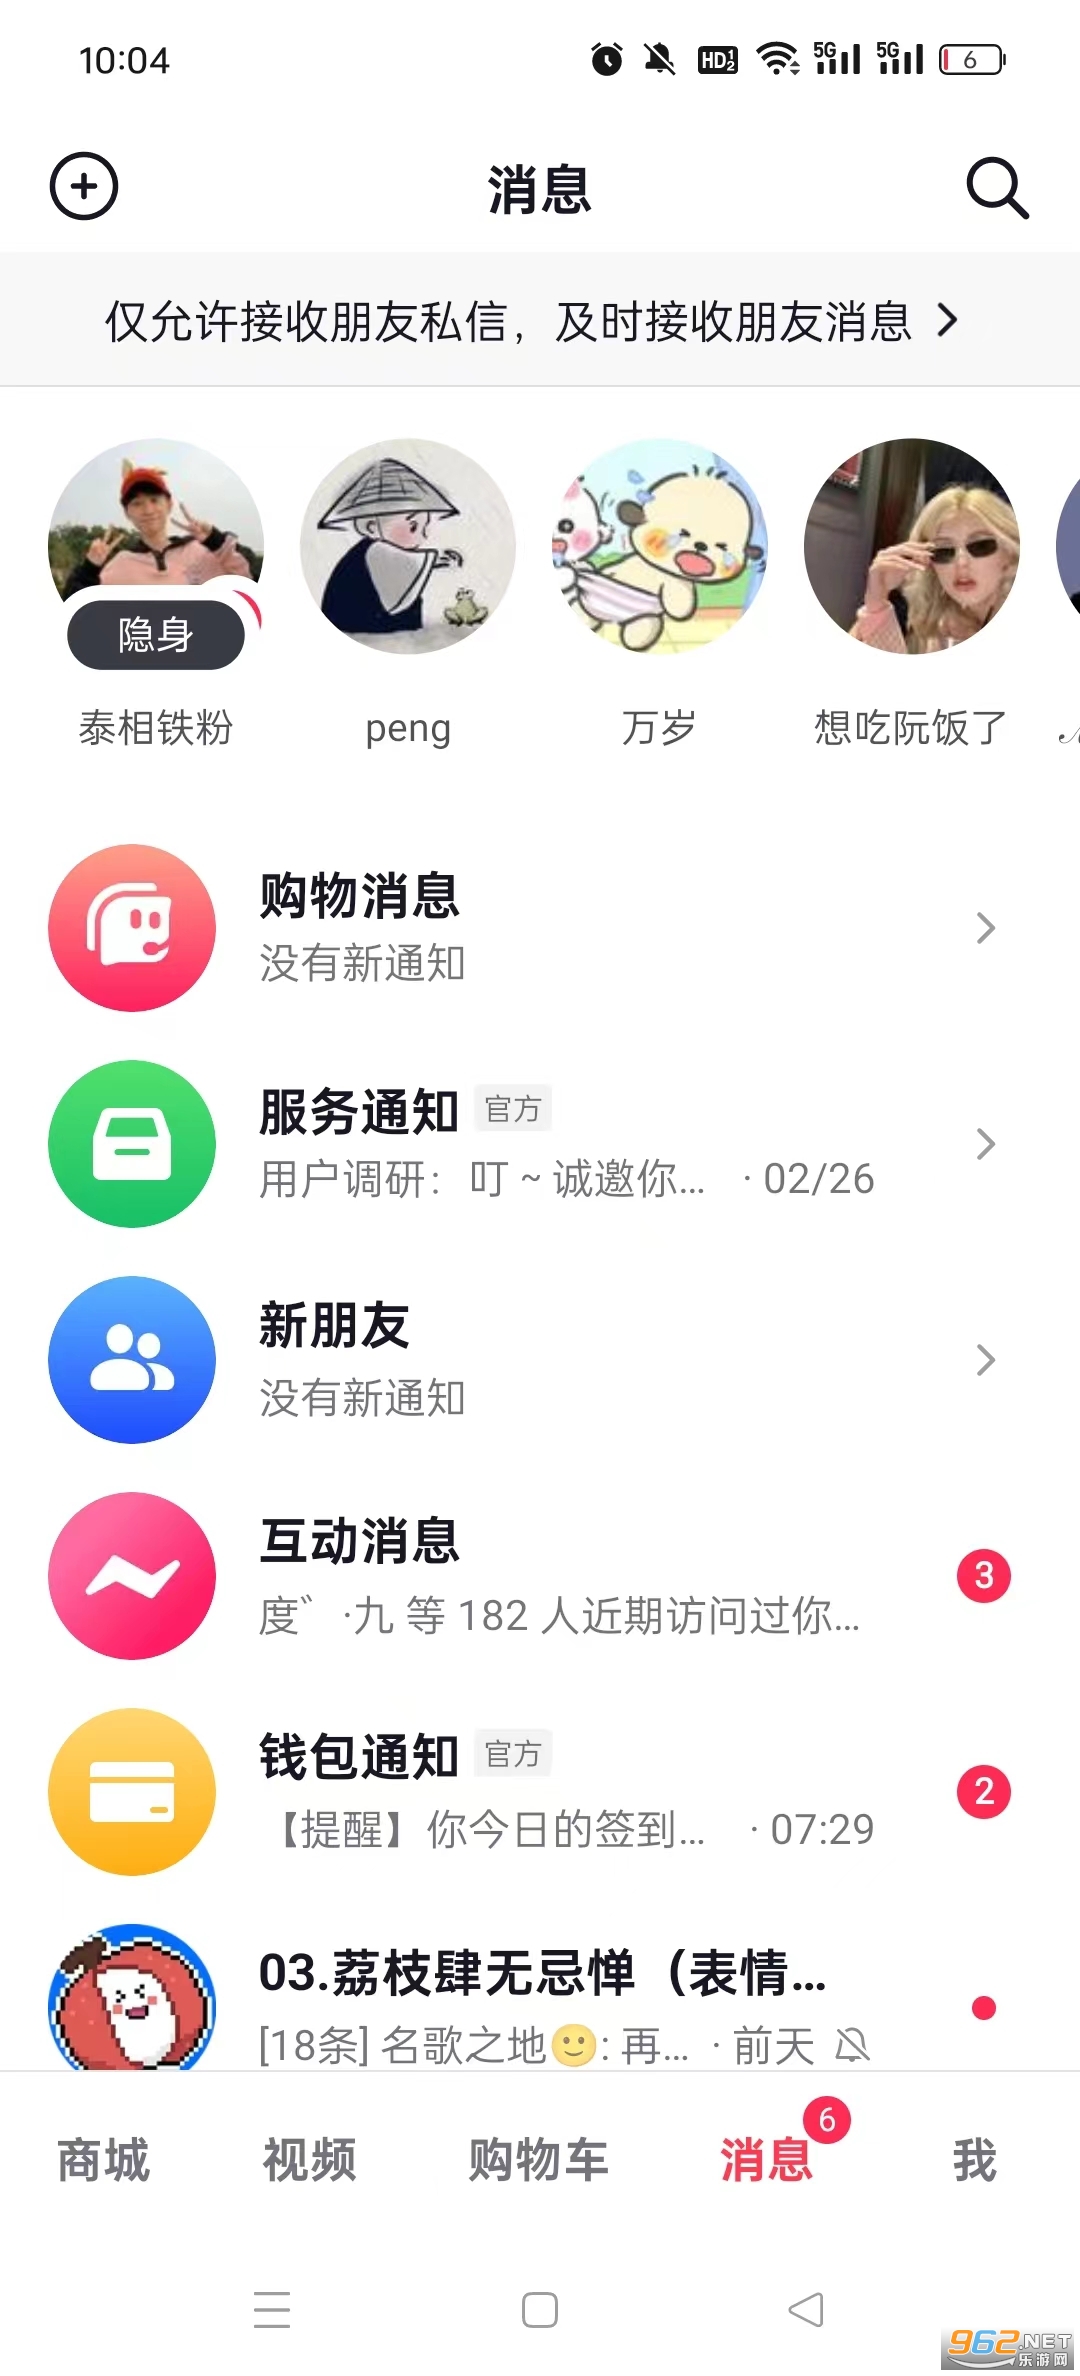  Screenshot 1 of app v28.2.0 (Tiaoyin Shopping Mall) in Tiaoyin Shopping Mall